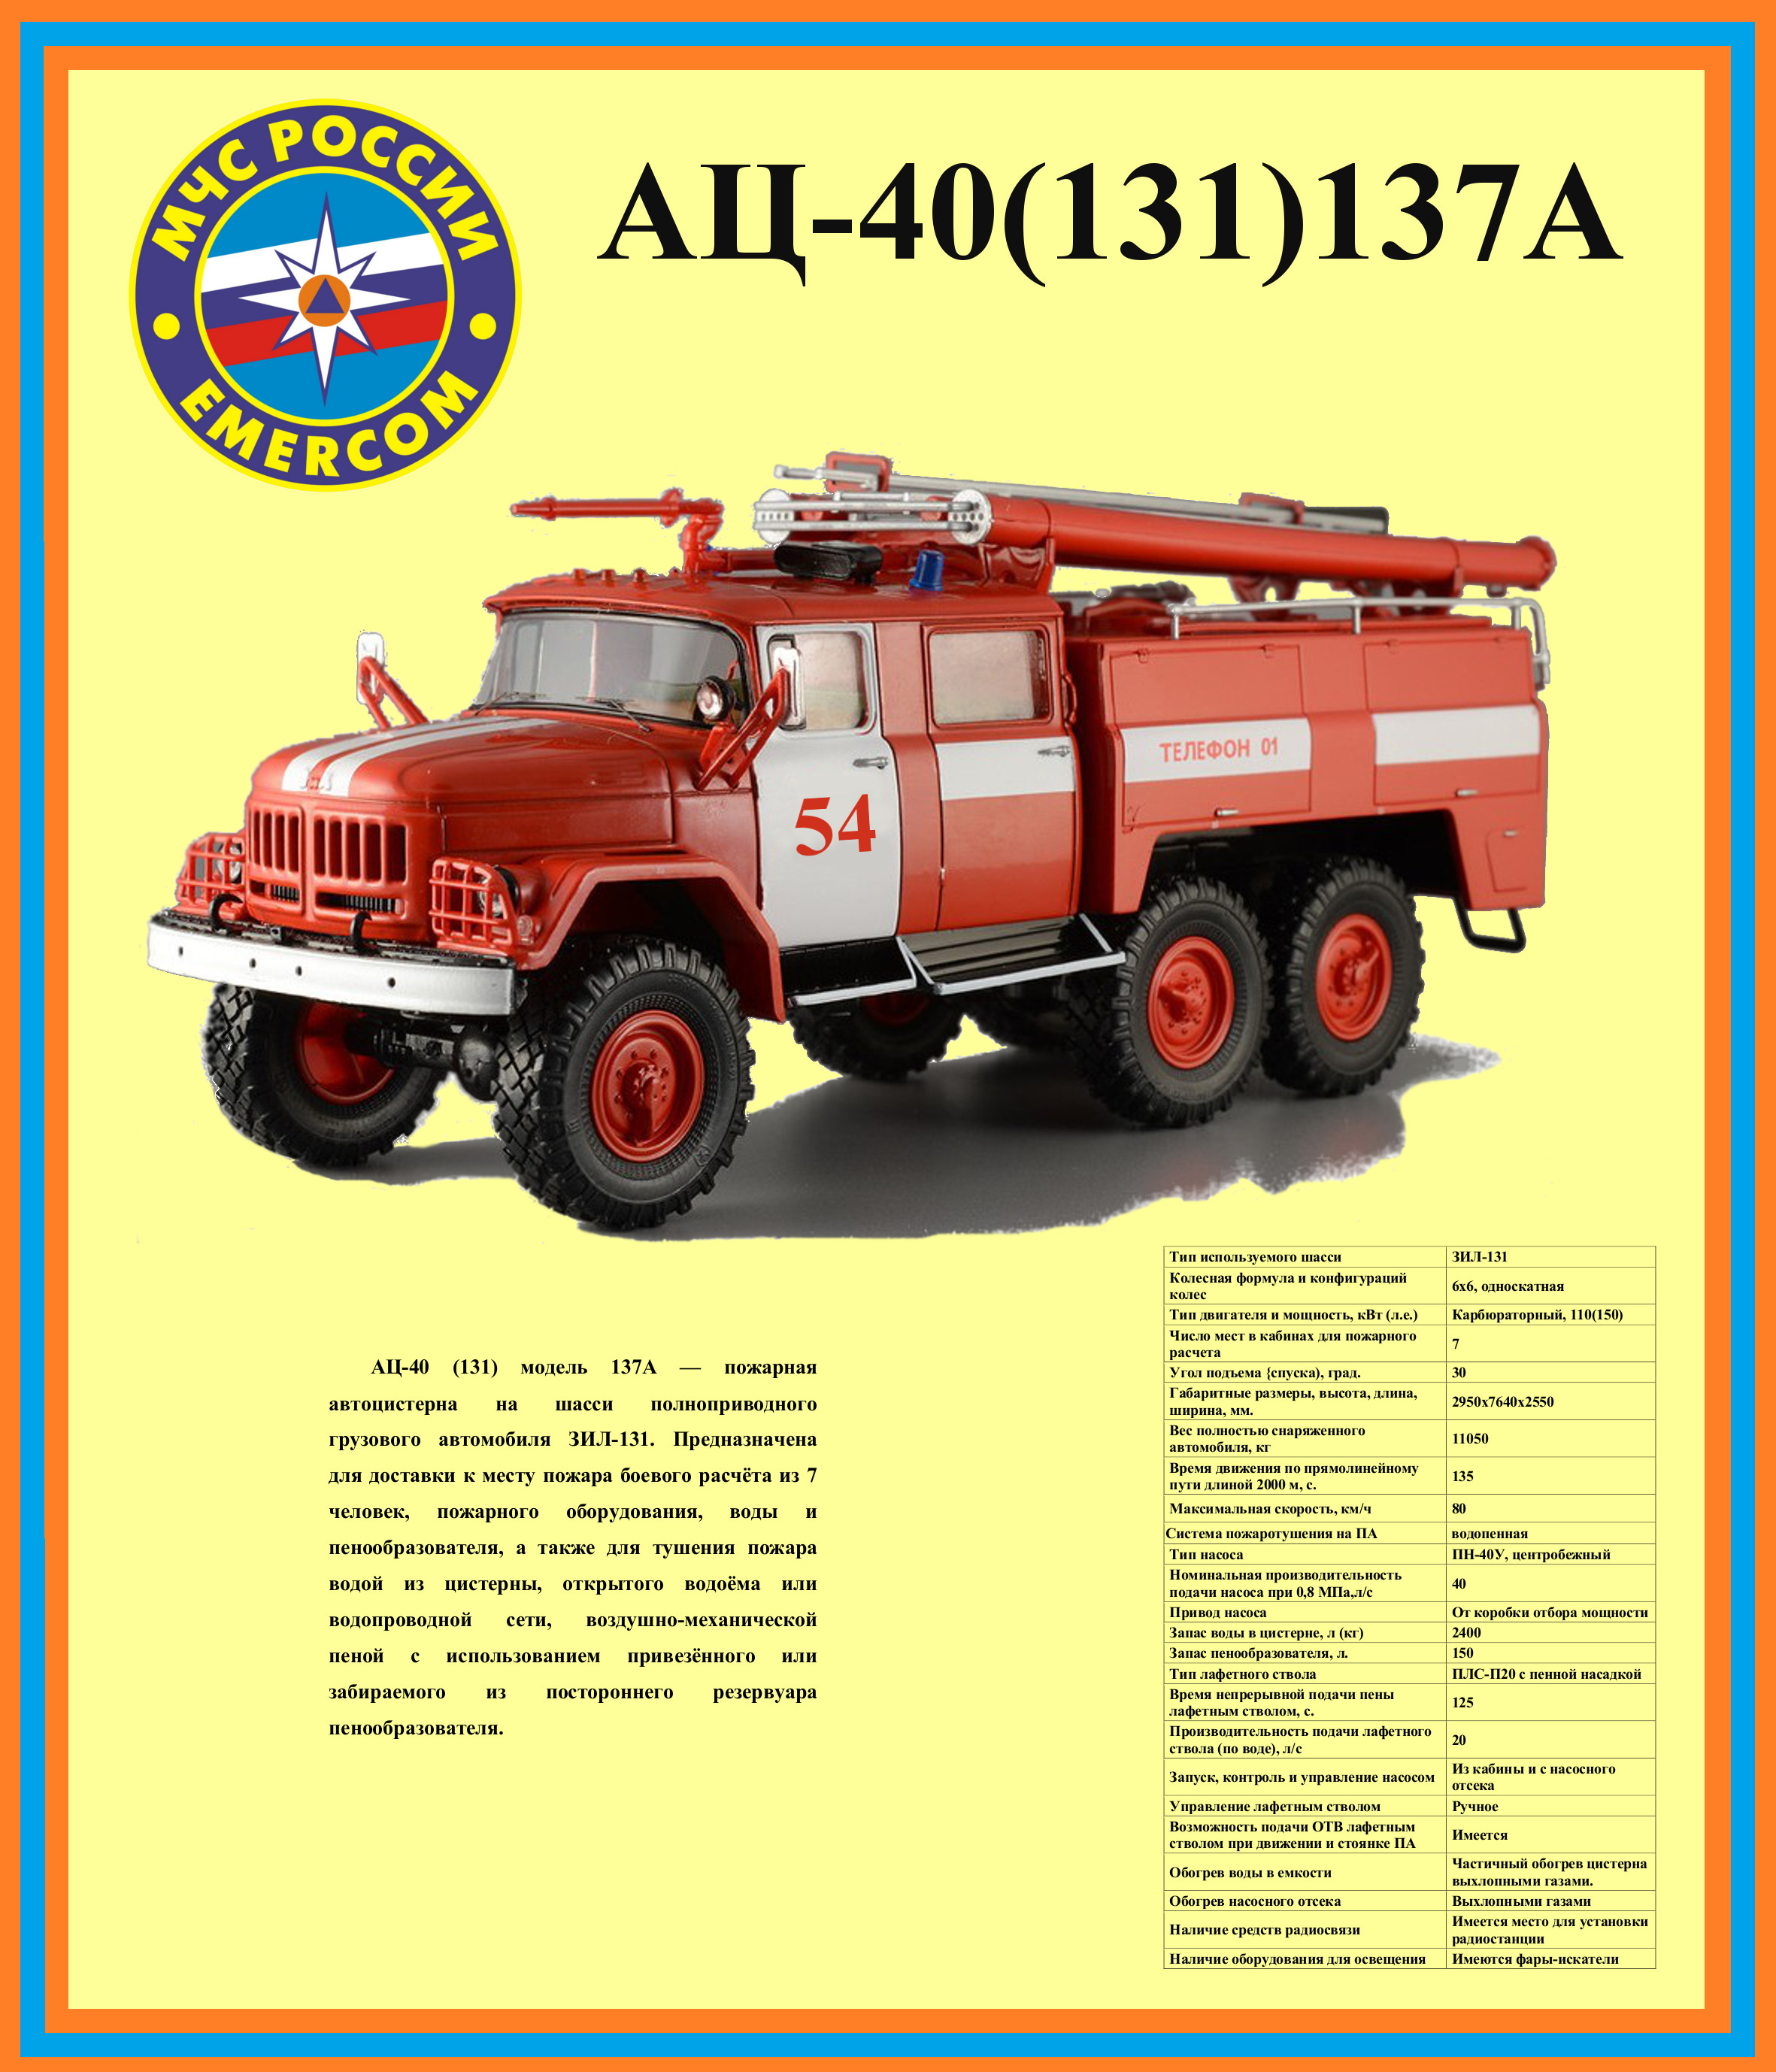 Сколько весит зил 131. ТТХ ЗИЛ 131 пожарный автомобиль. Пожарная машина ЗИЛ 131 технические характеристики. ЗИЛ 131 пожарный технические характеристики. Технические данные ЗИЛ 131 пожарный автомобиль.